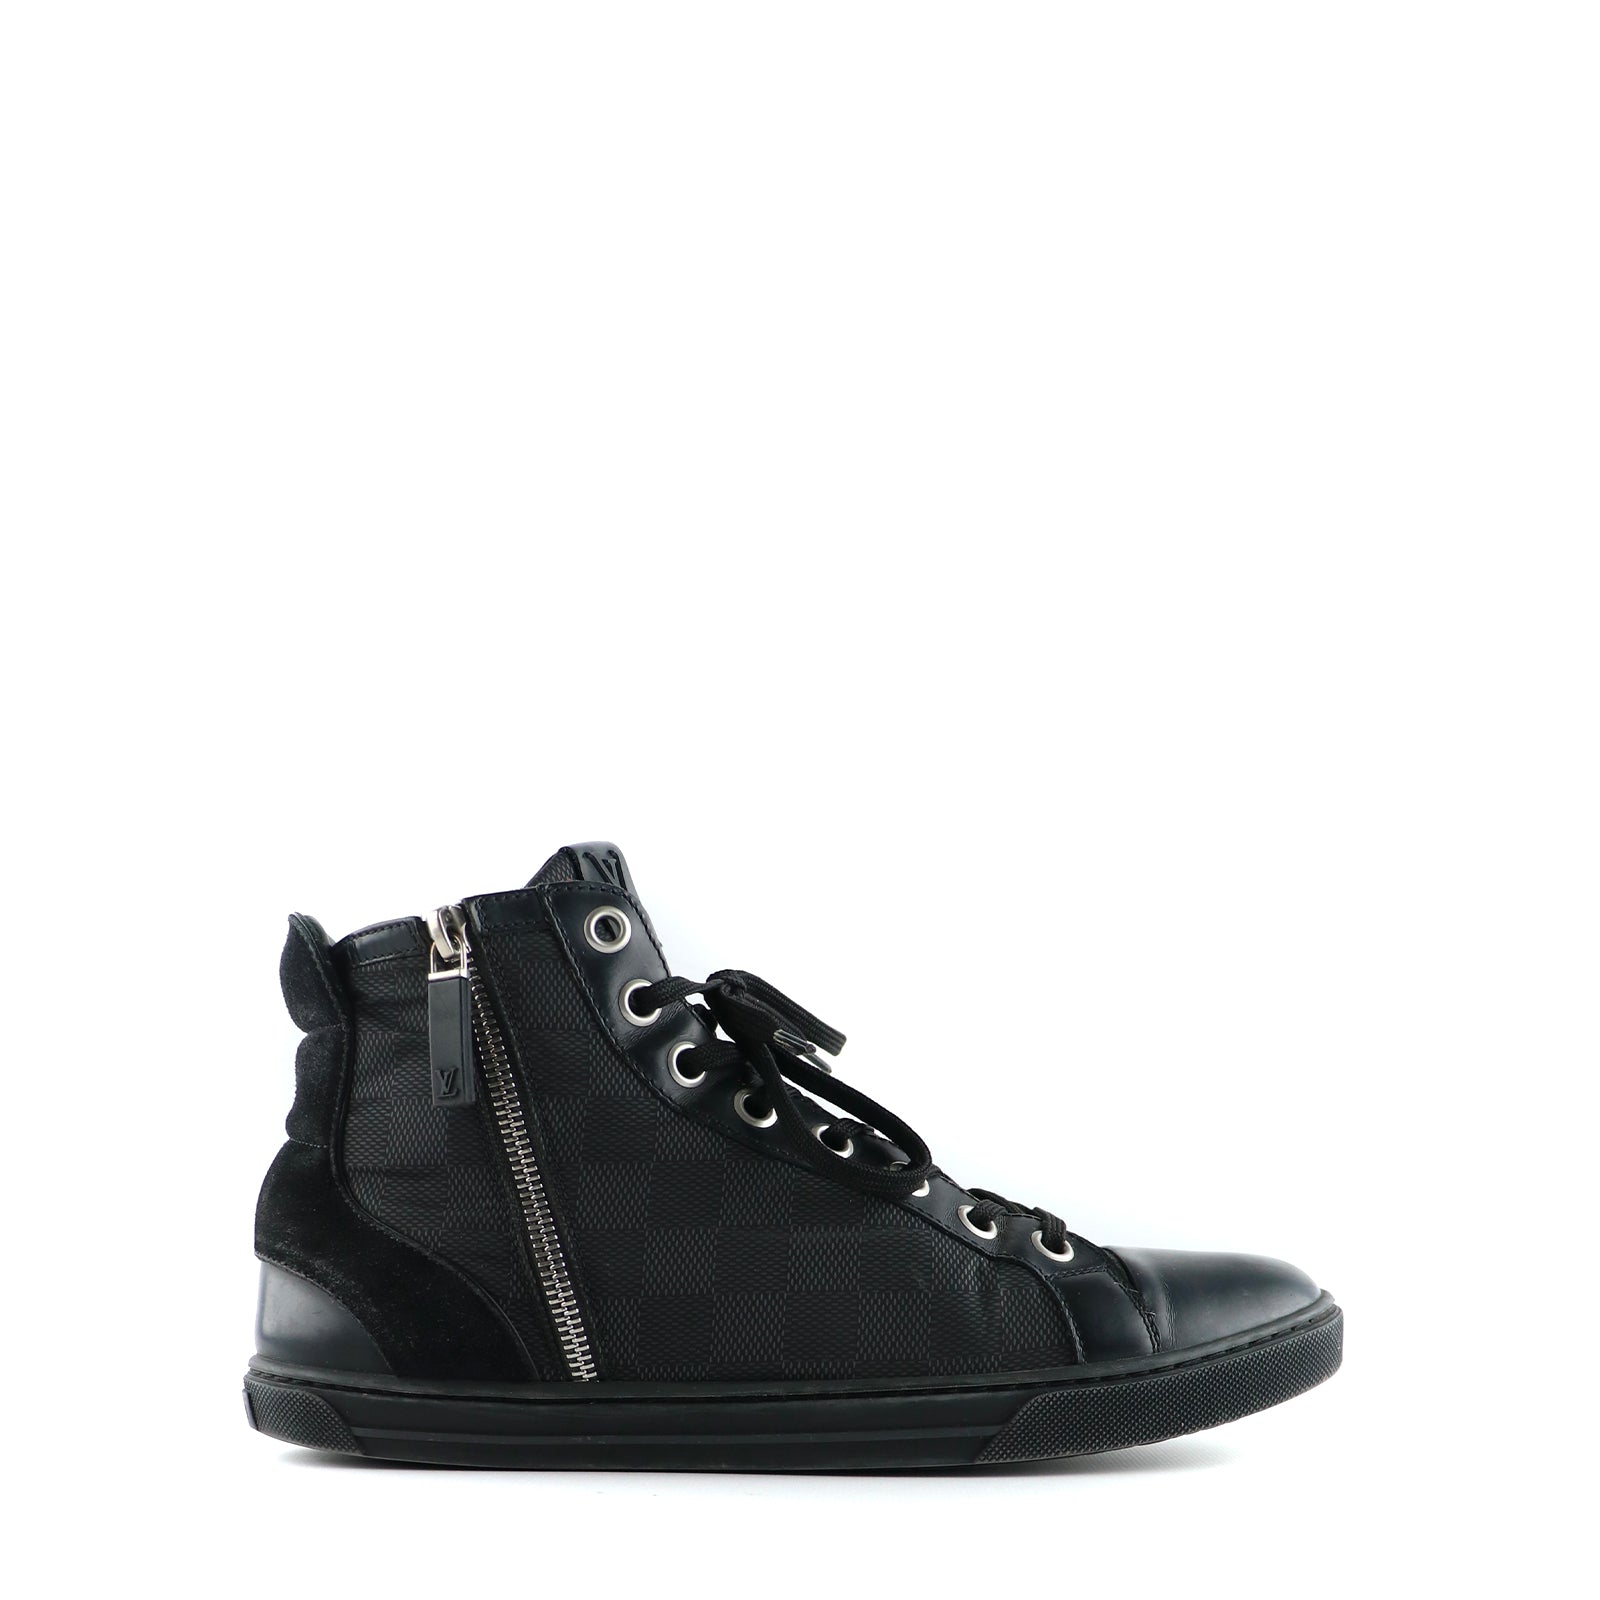 LOUIS VUITTON - Sneakers damier graphite (T41,5)